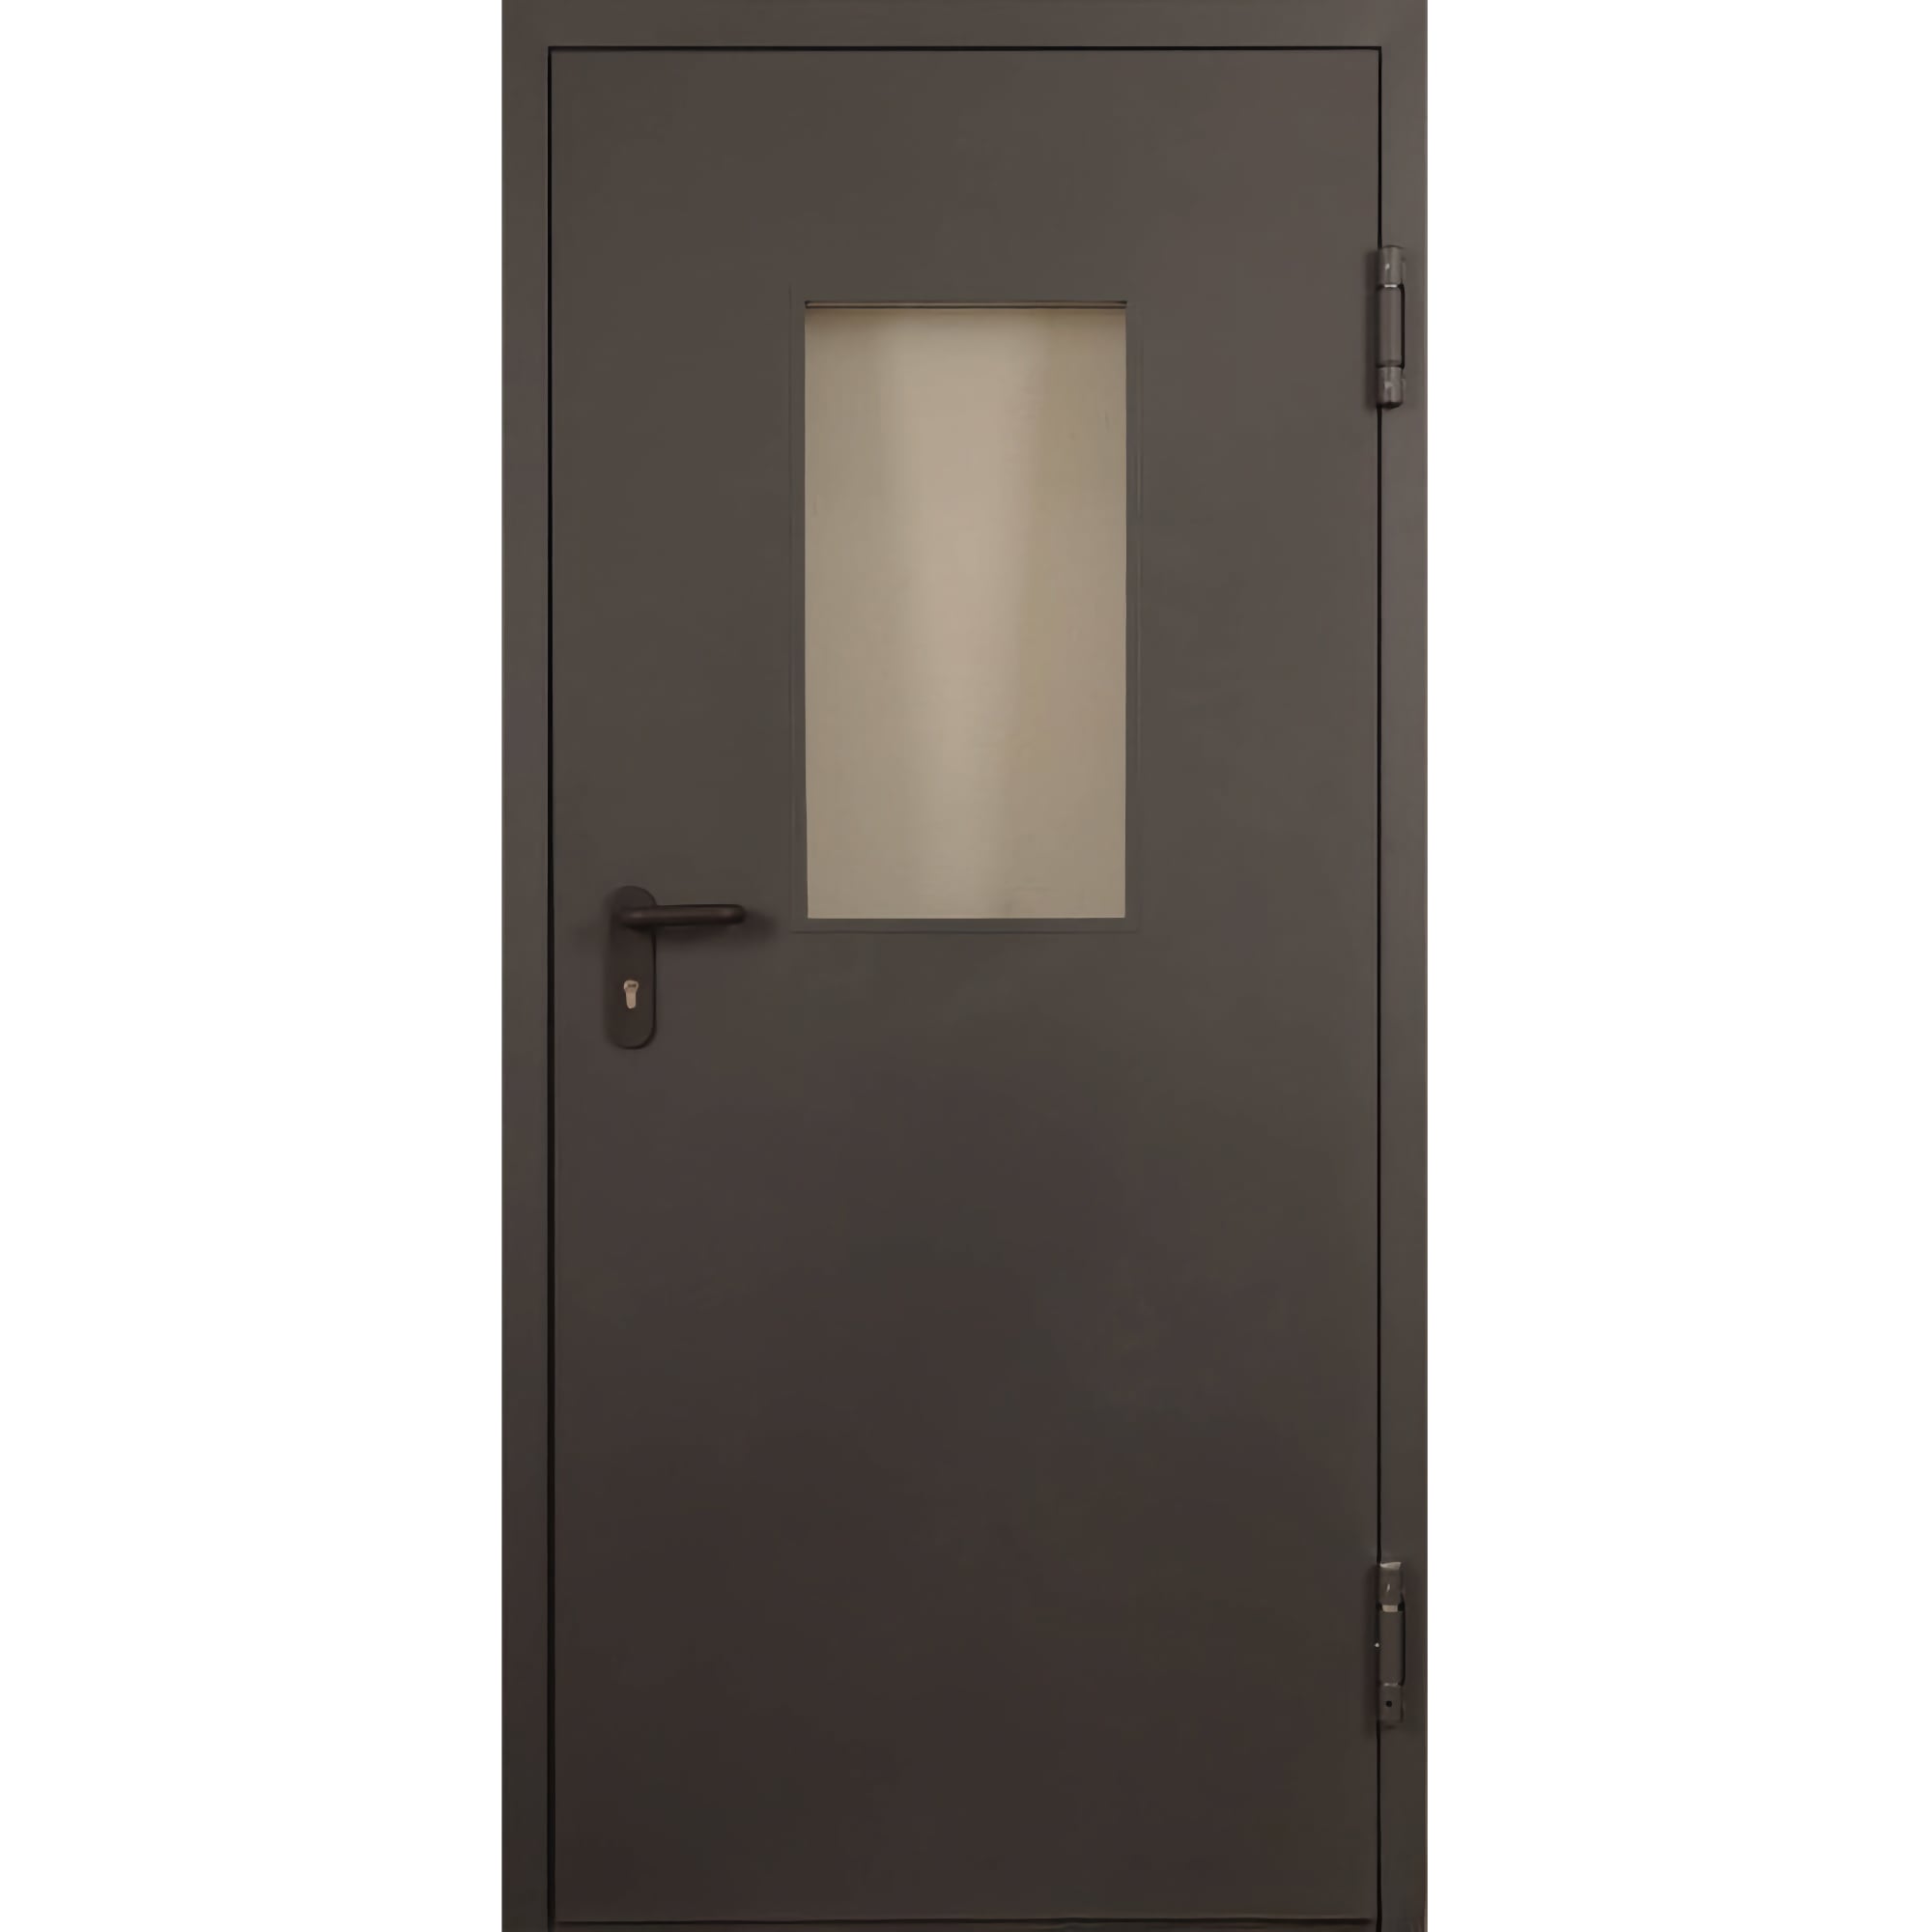 Огнестойкая противопожарная дверь в каталоге интернет-магазина с доставкой и установкой - TD-EI-60 стекло • 860*2050